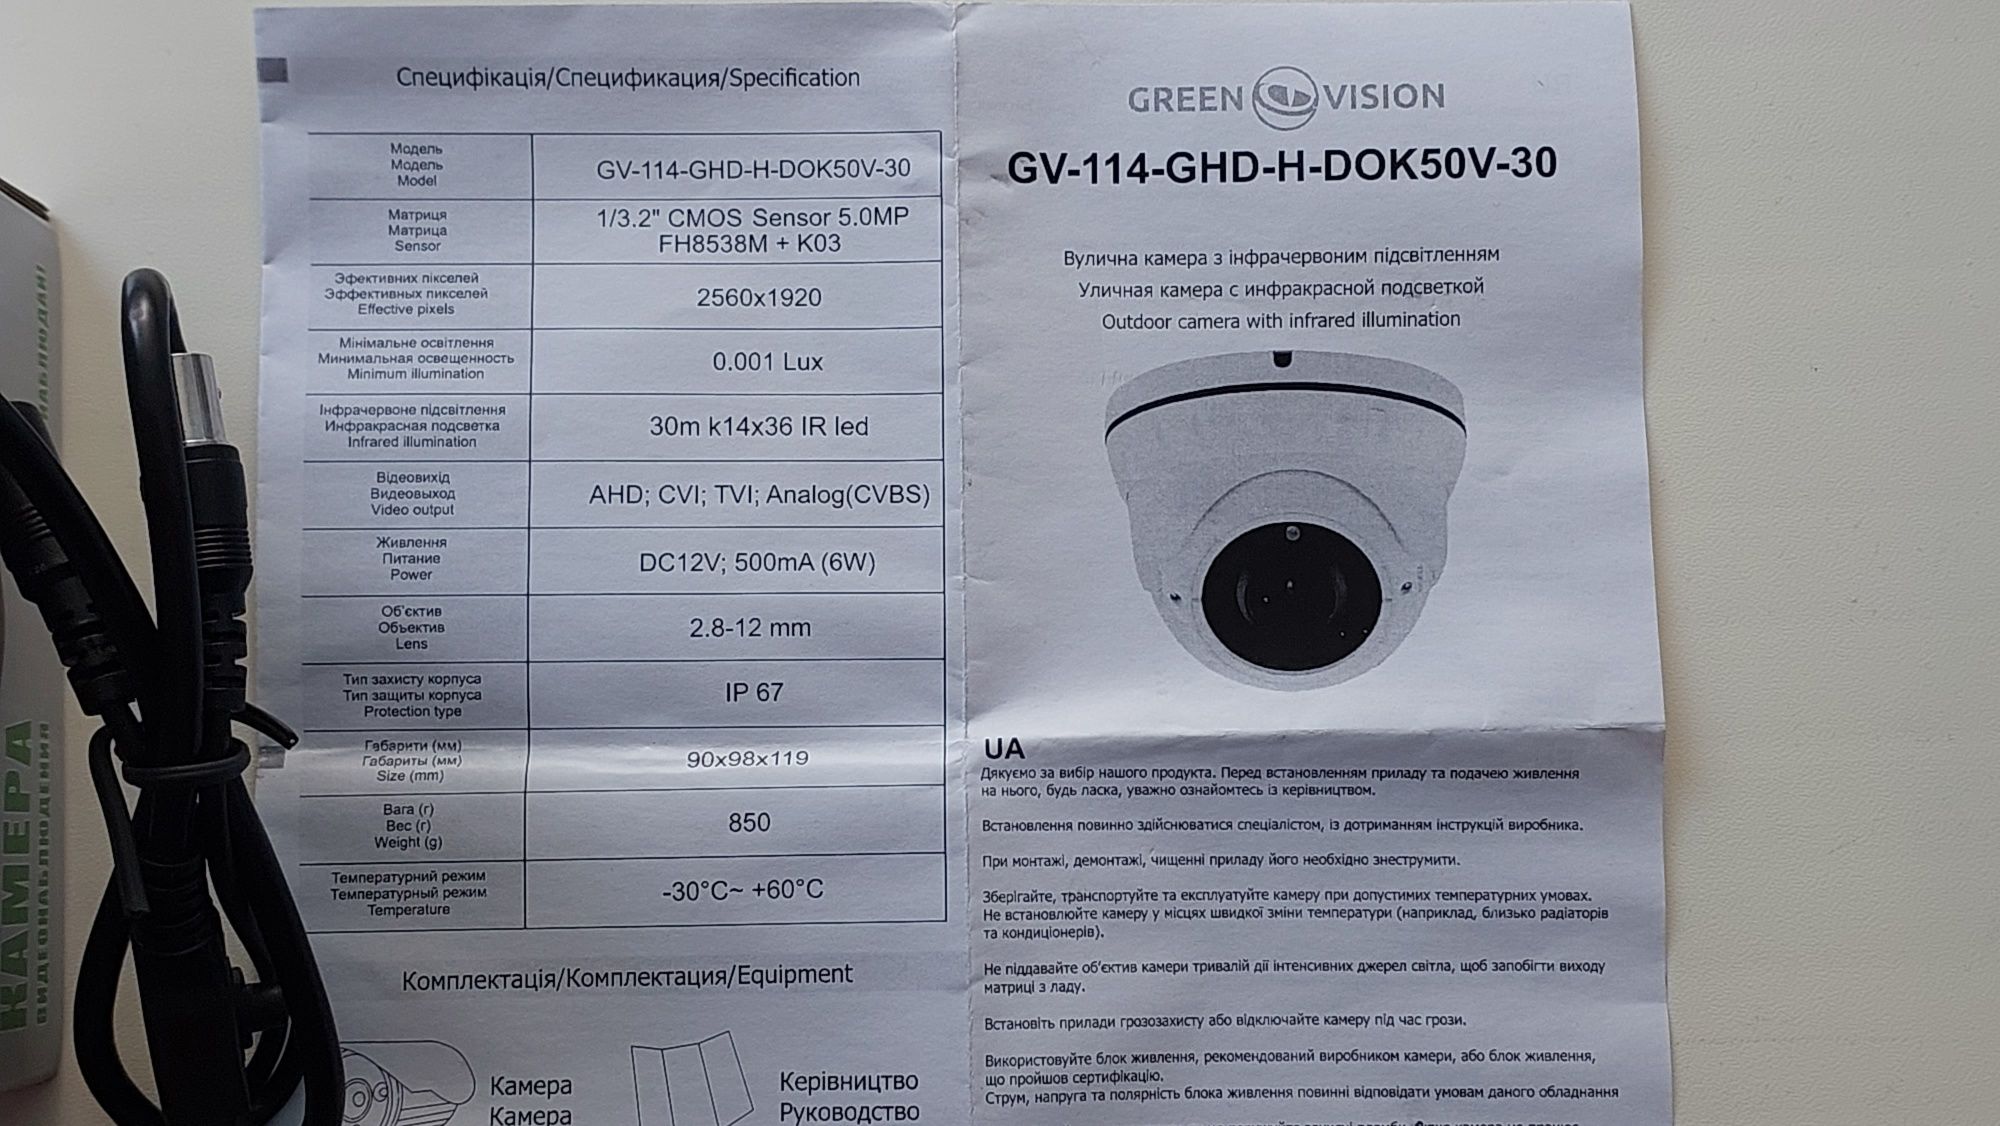 Гибридная антивандальная герметичная видеокамера наблюдения 5MP
GV-114